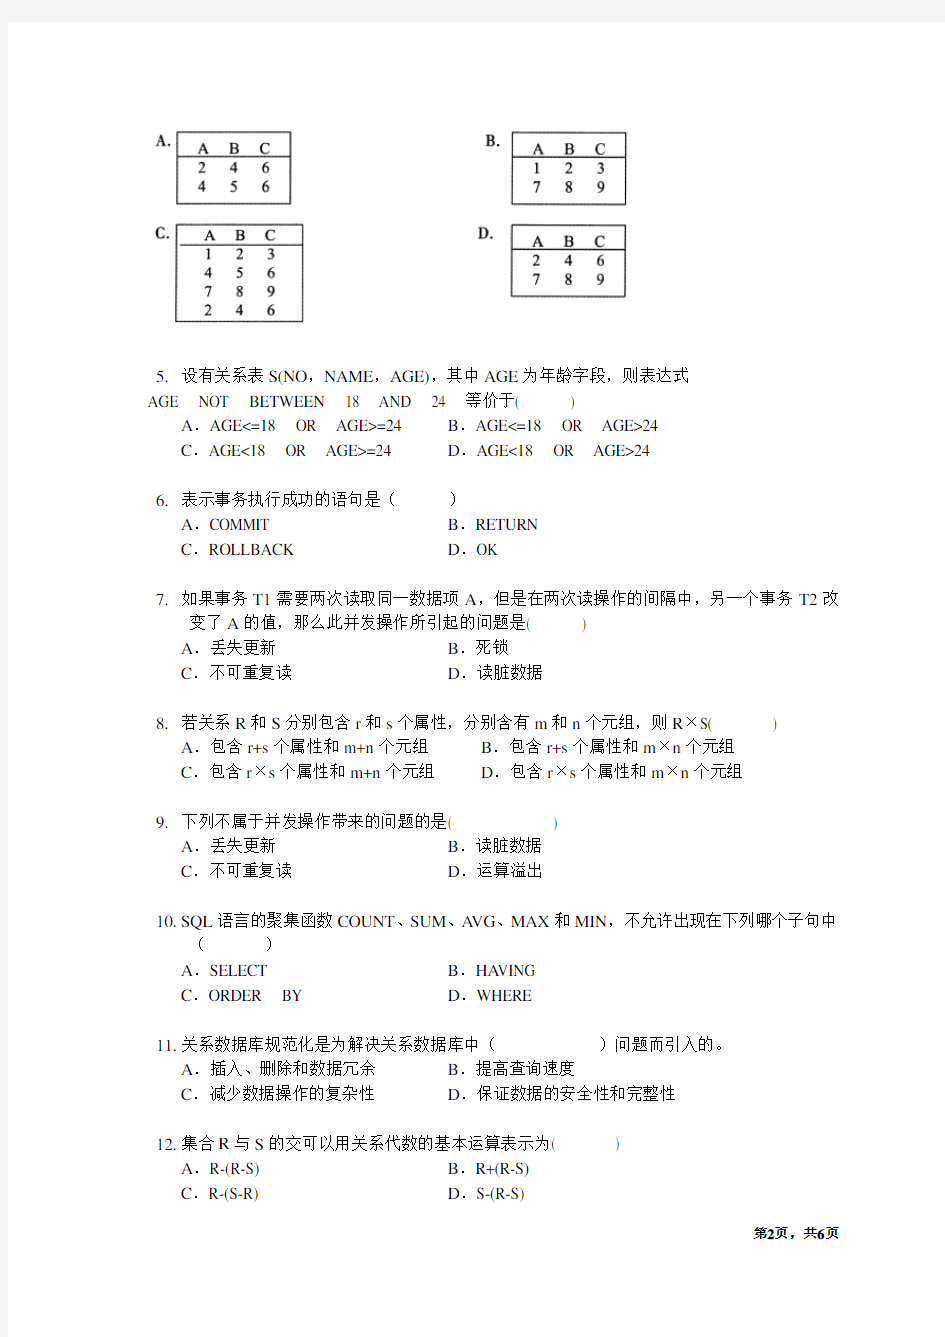 浙大城市学院2013-2014-1数据库系统原理期末试卷-问卷